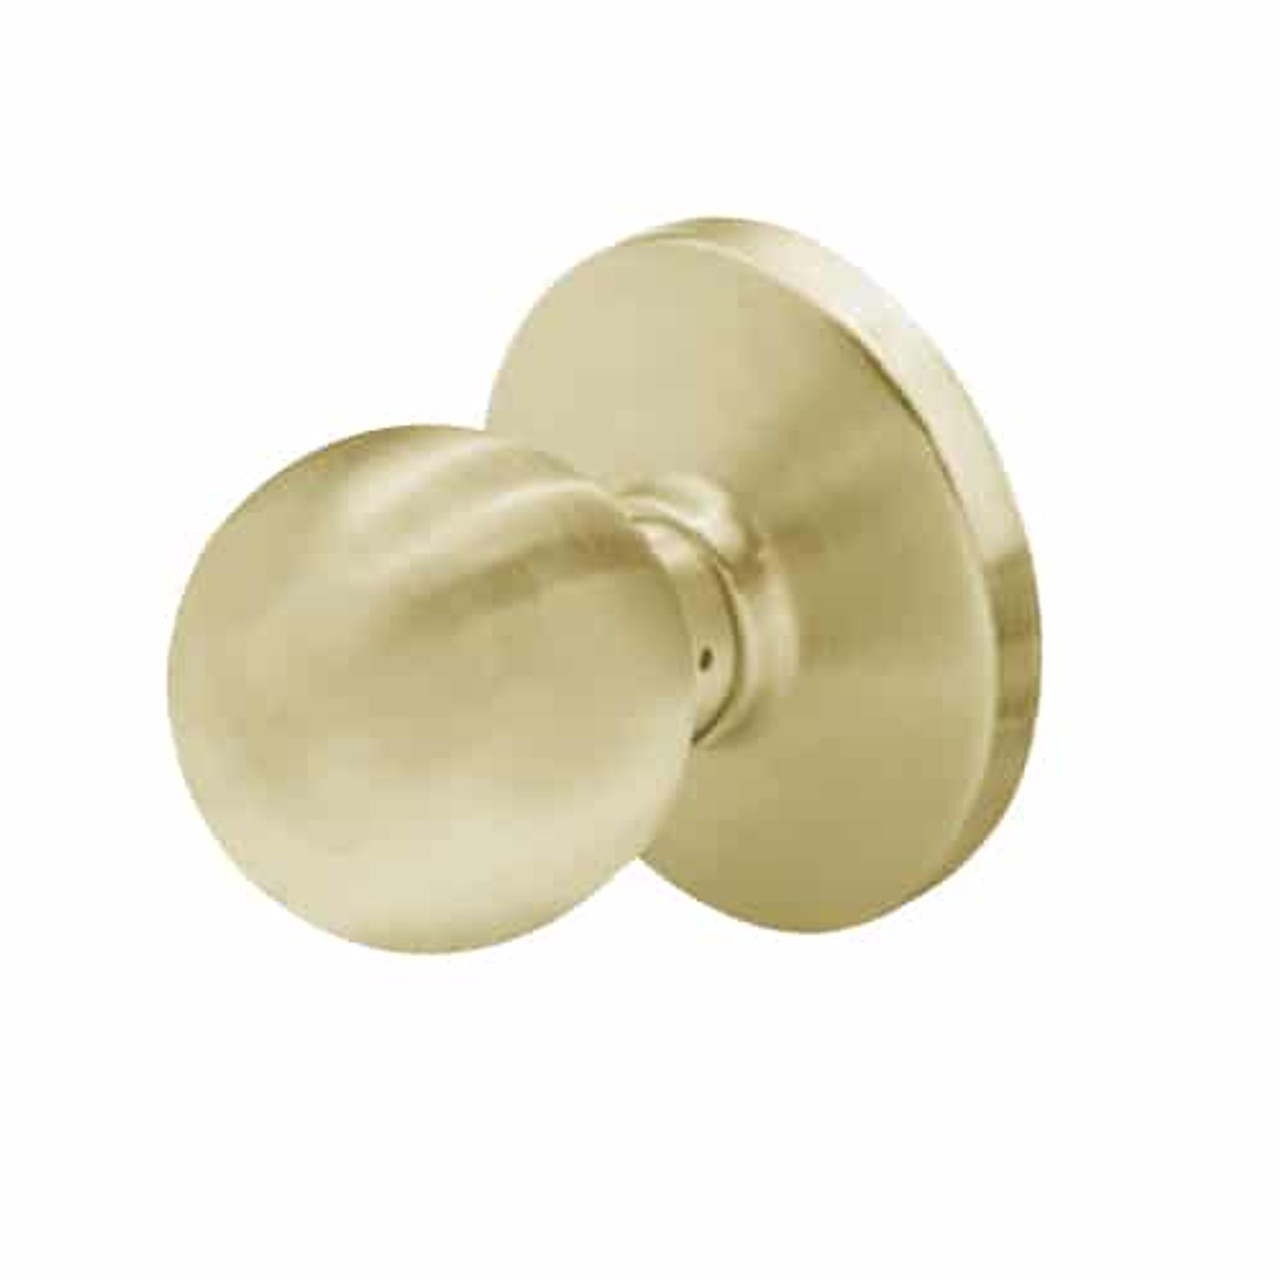 6K20N4DS3606 Best 6K Series Passage Medium Duty Cylindrical Knob Locks with Round Style in Satin Brass